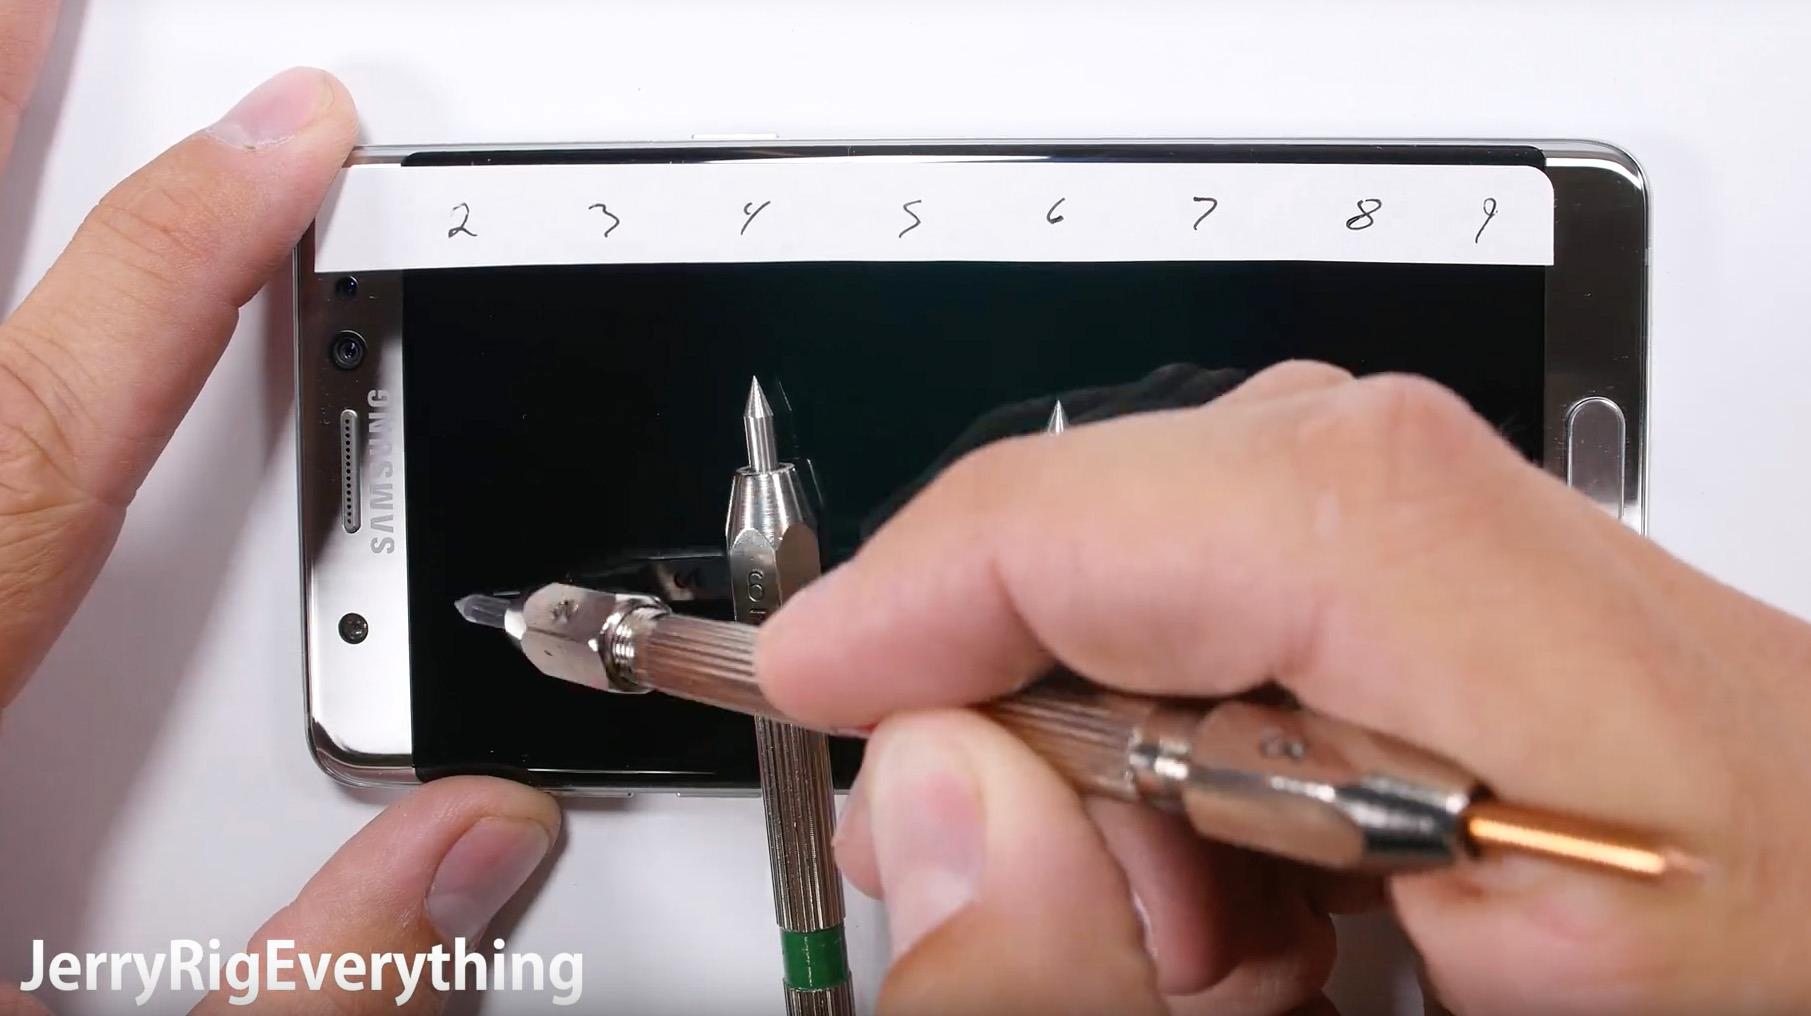 Mineralog bekrefter at YouTube-video ikke viser at Galaxy Note 7 lett lar seg ripe